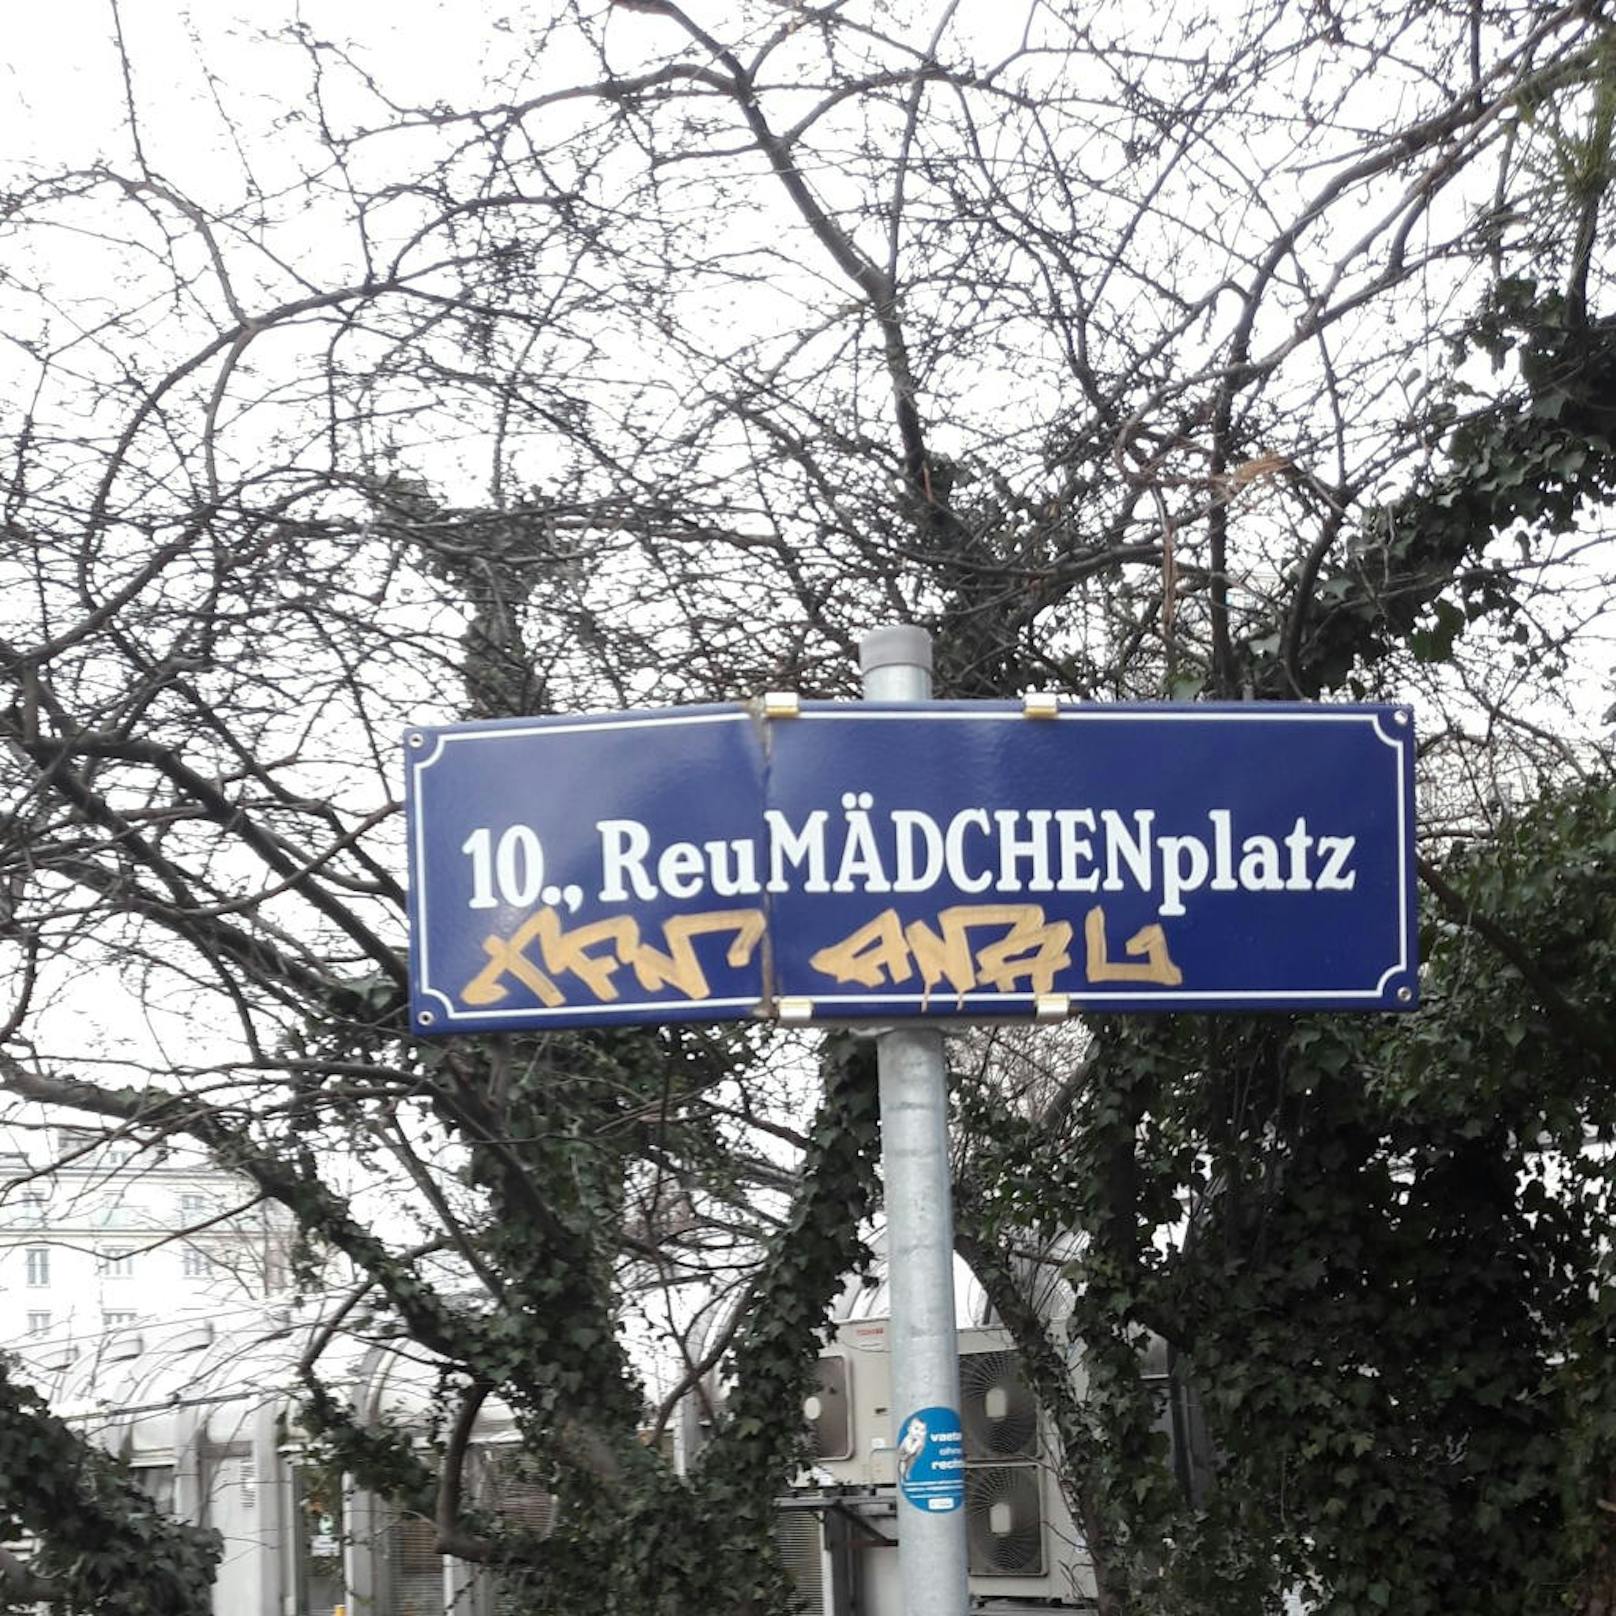 Der Wiener "Reumädchenplat" als Alternative zum Reumannplatz polarisiert.